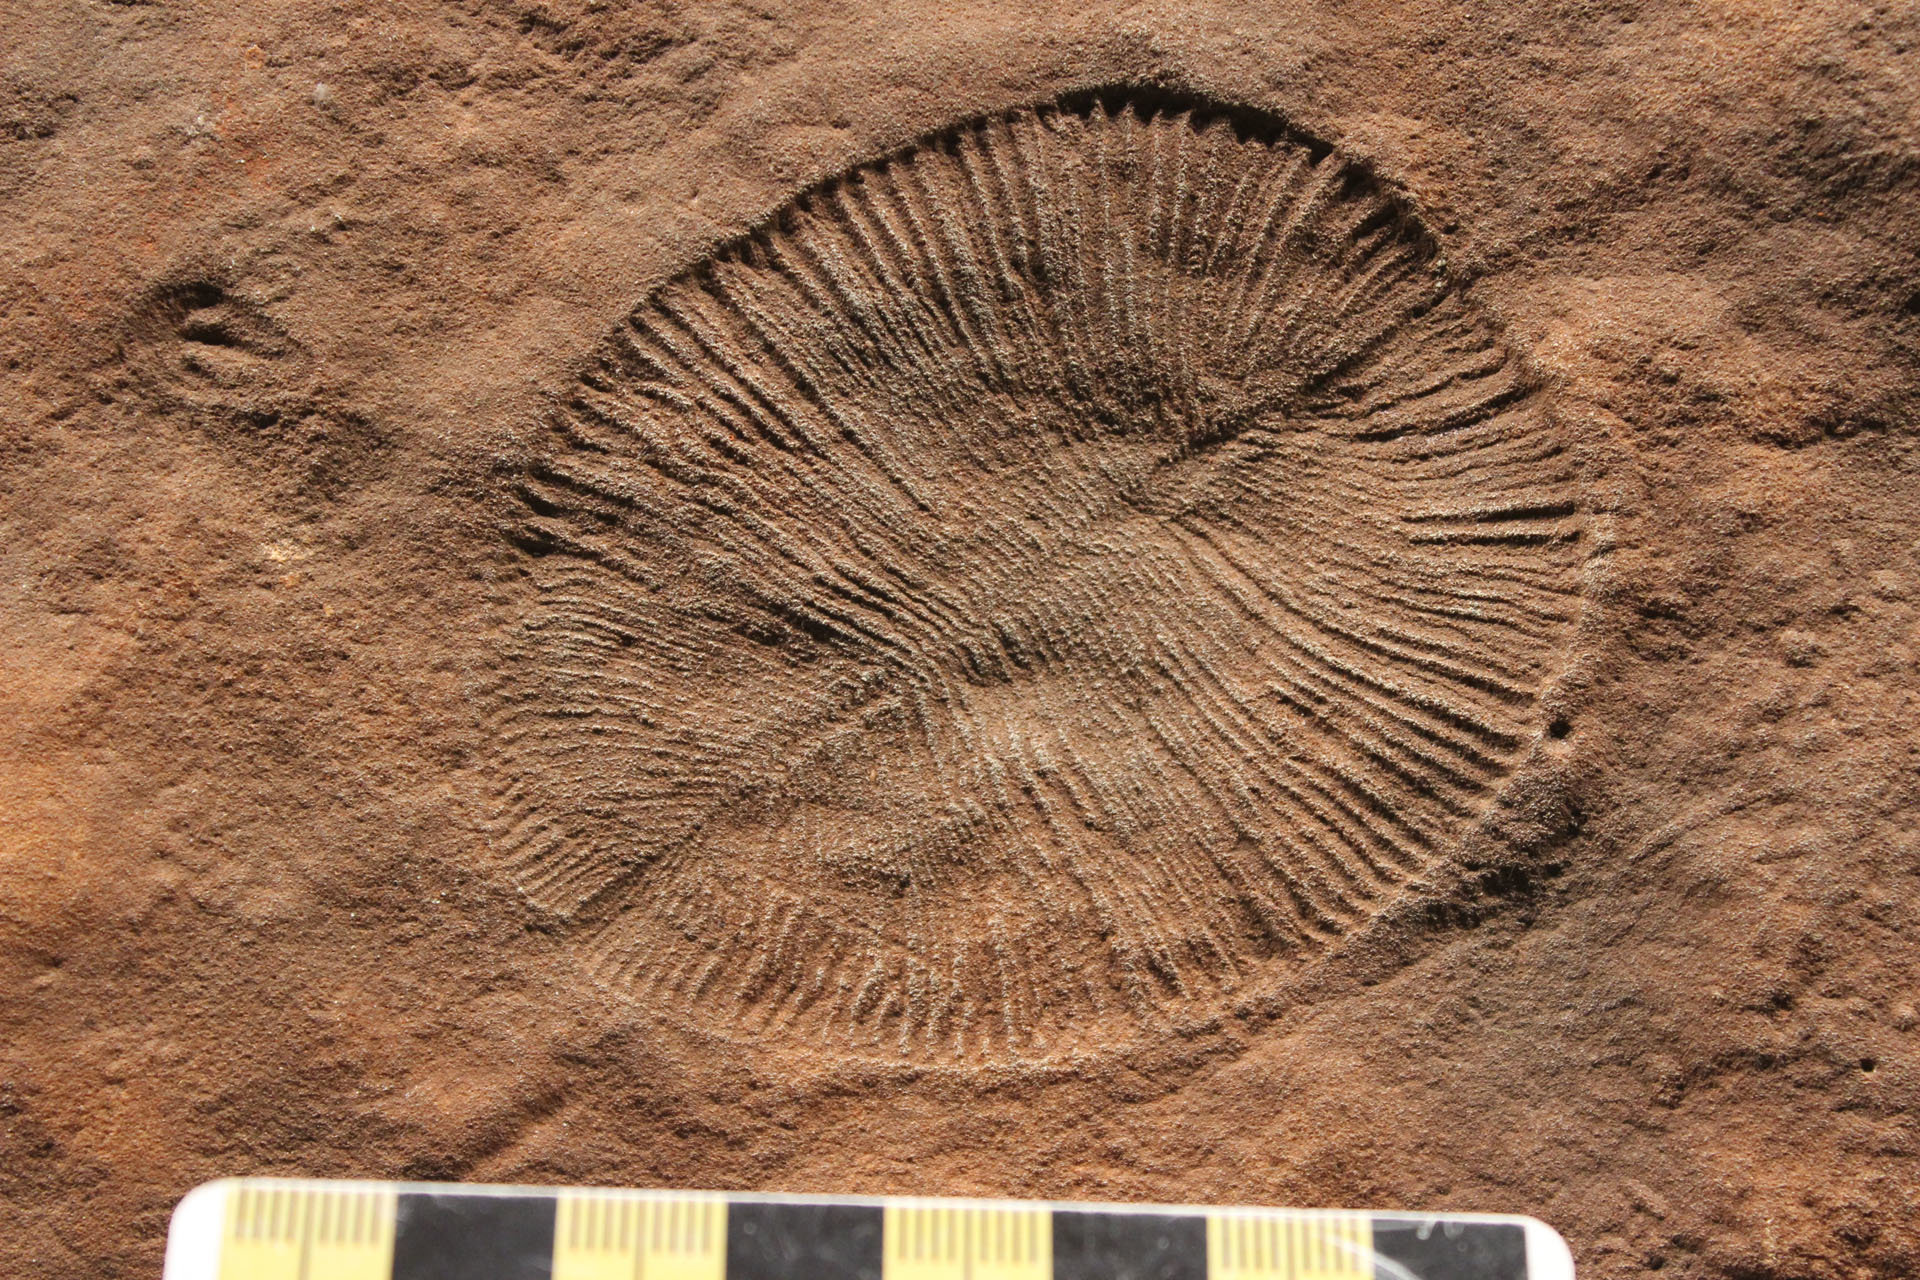 researcher's fossil, found in australia